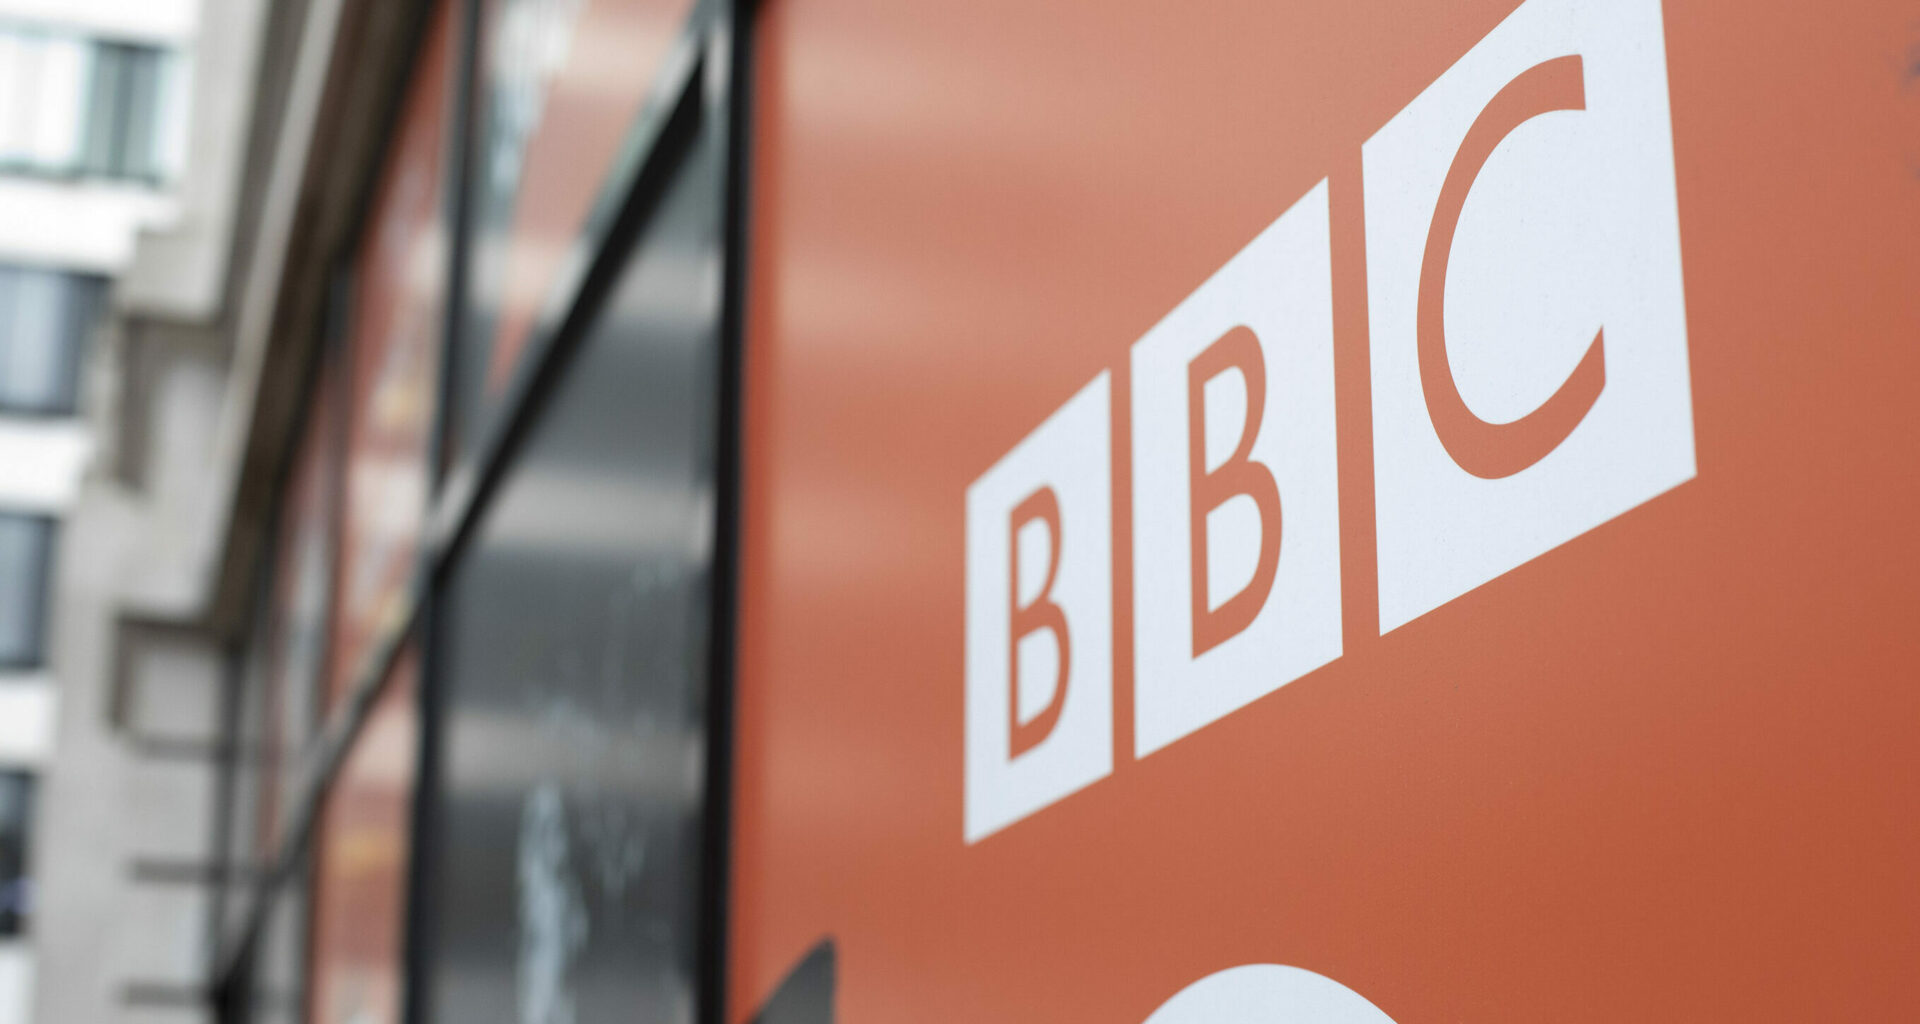 BBC public service broadcaster